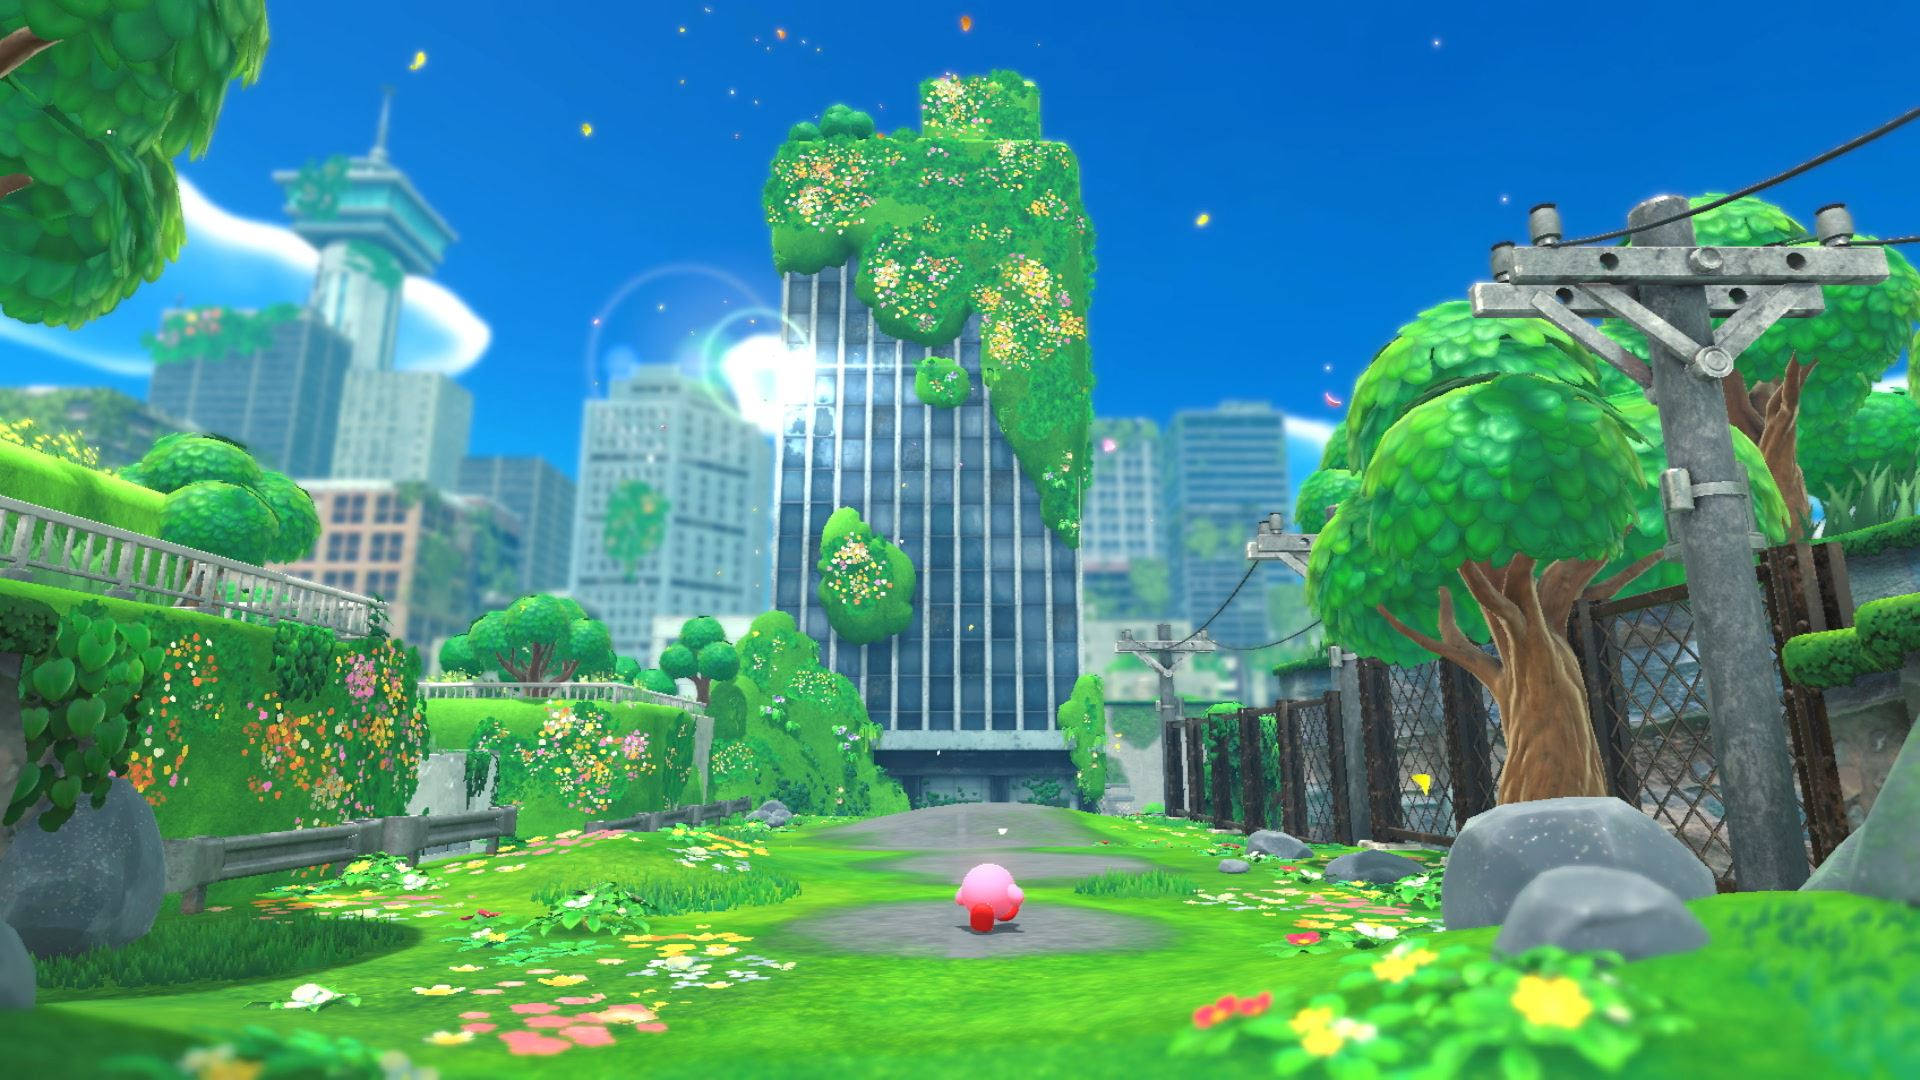 Tải xuống Kirby and the Forgotten Land và đắm chìm trong những thế giới phong phú, đẹp đẽ và đầy hứng thú. Với những khả năng đặc biệt mới, Kirby sẽ đưa bạn vào hành trình thú vị để khám phá, chiến đấu và tiêu diệt các quái vật. Truy cập ngay và tải xuống trò chơi độc đáo này.